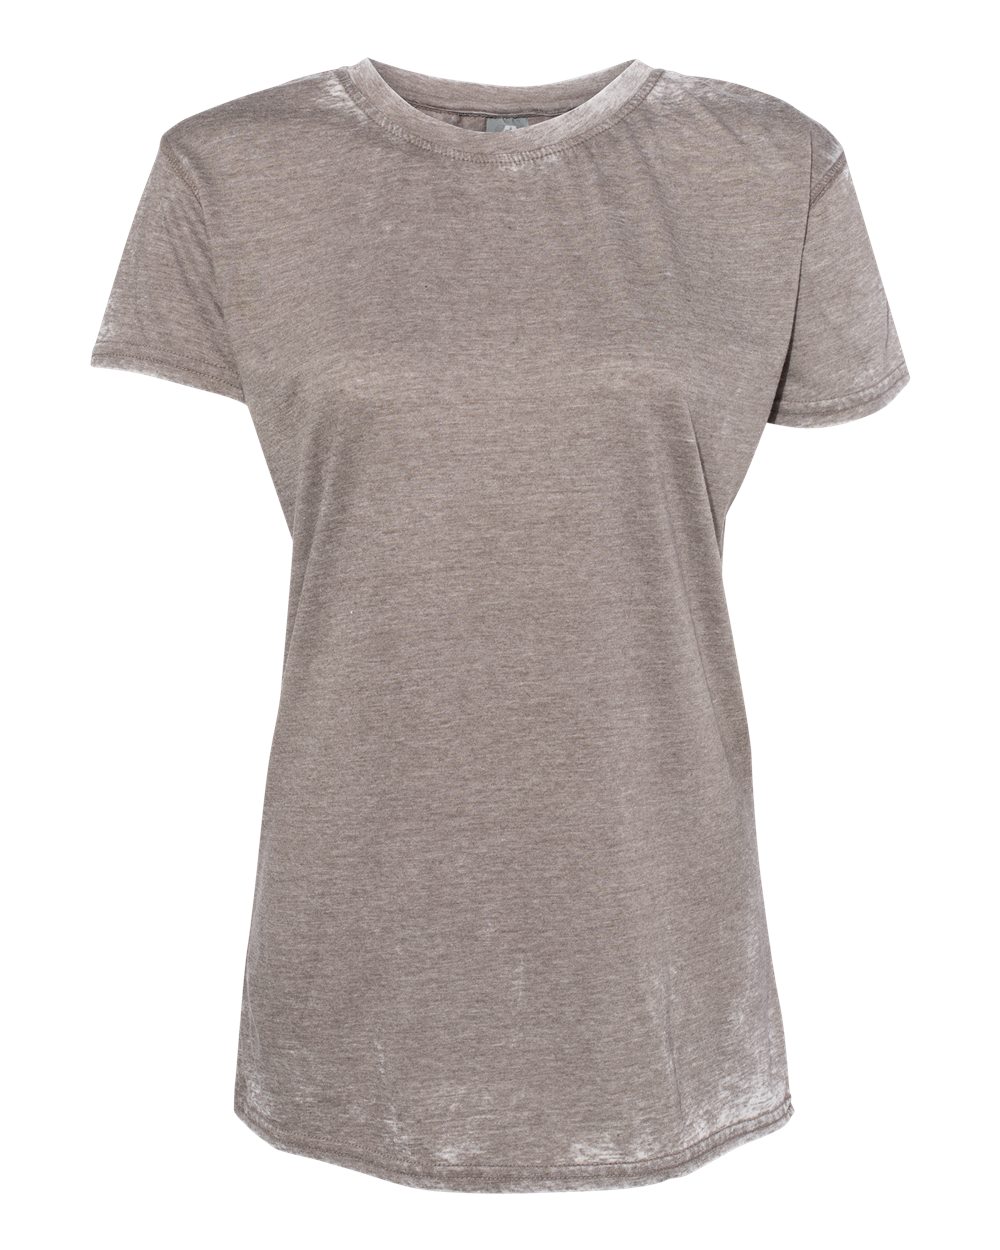 J. America - 8116 - Women's Zen Jersey Short Sleeve T-Shirt